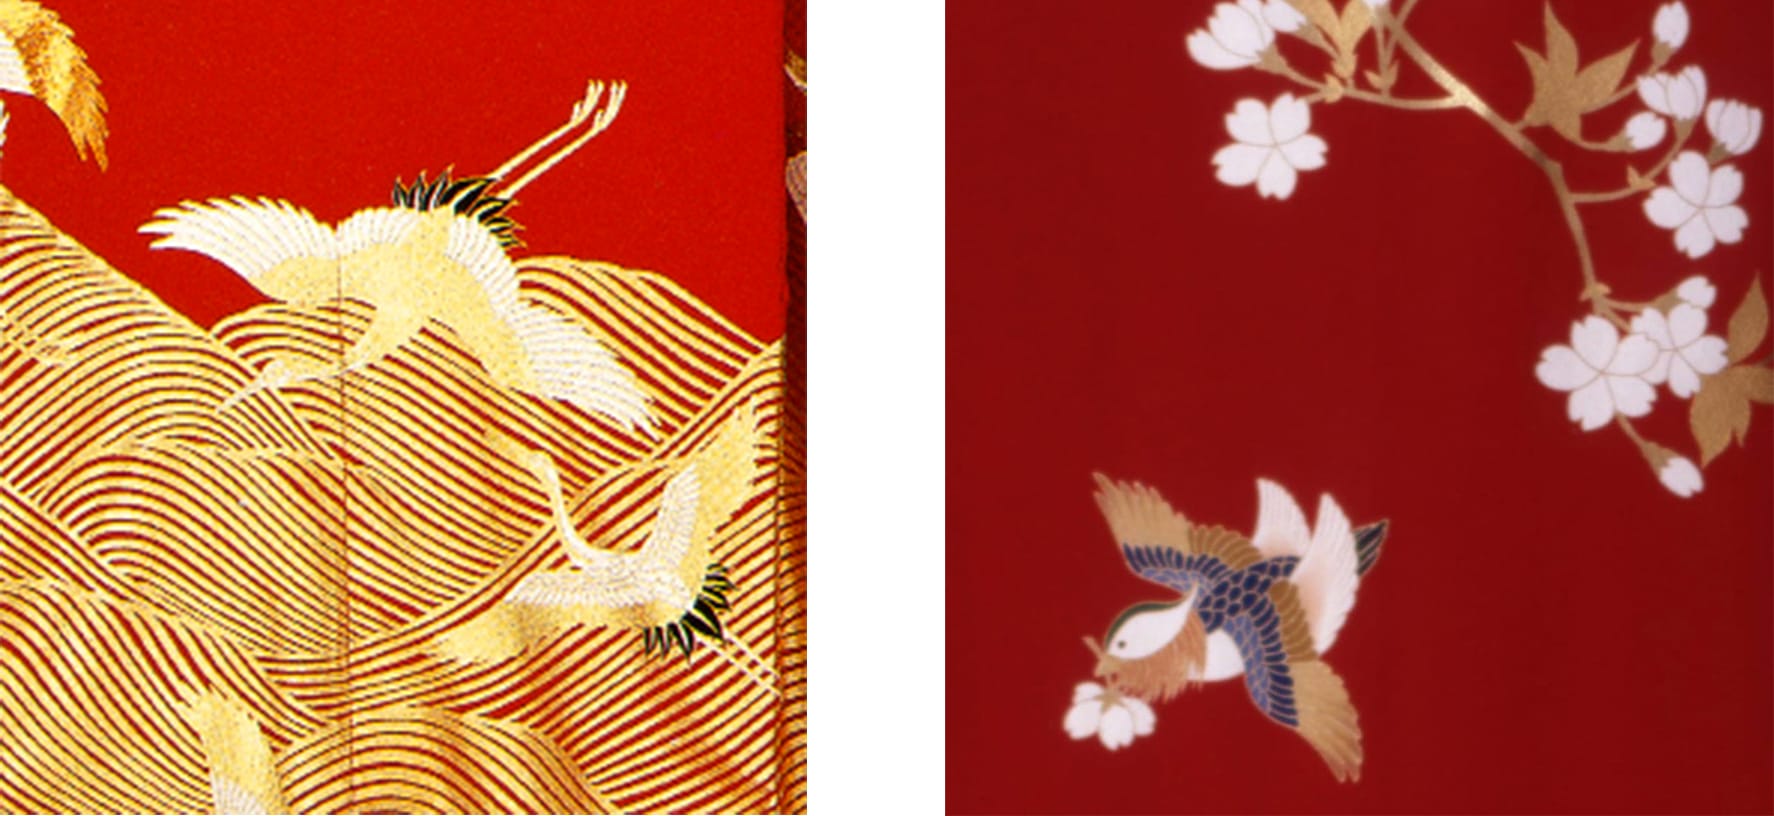 日本の瑞鳥の代表である鶴を主題にしたきもの（左）や雌雄仲睦まじい鴛鴦をモチーフにしたきもの（右）は、慶事の晴着として愛されてきた